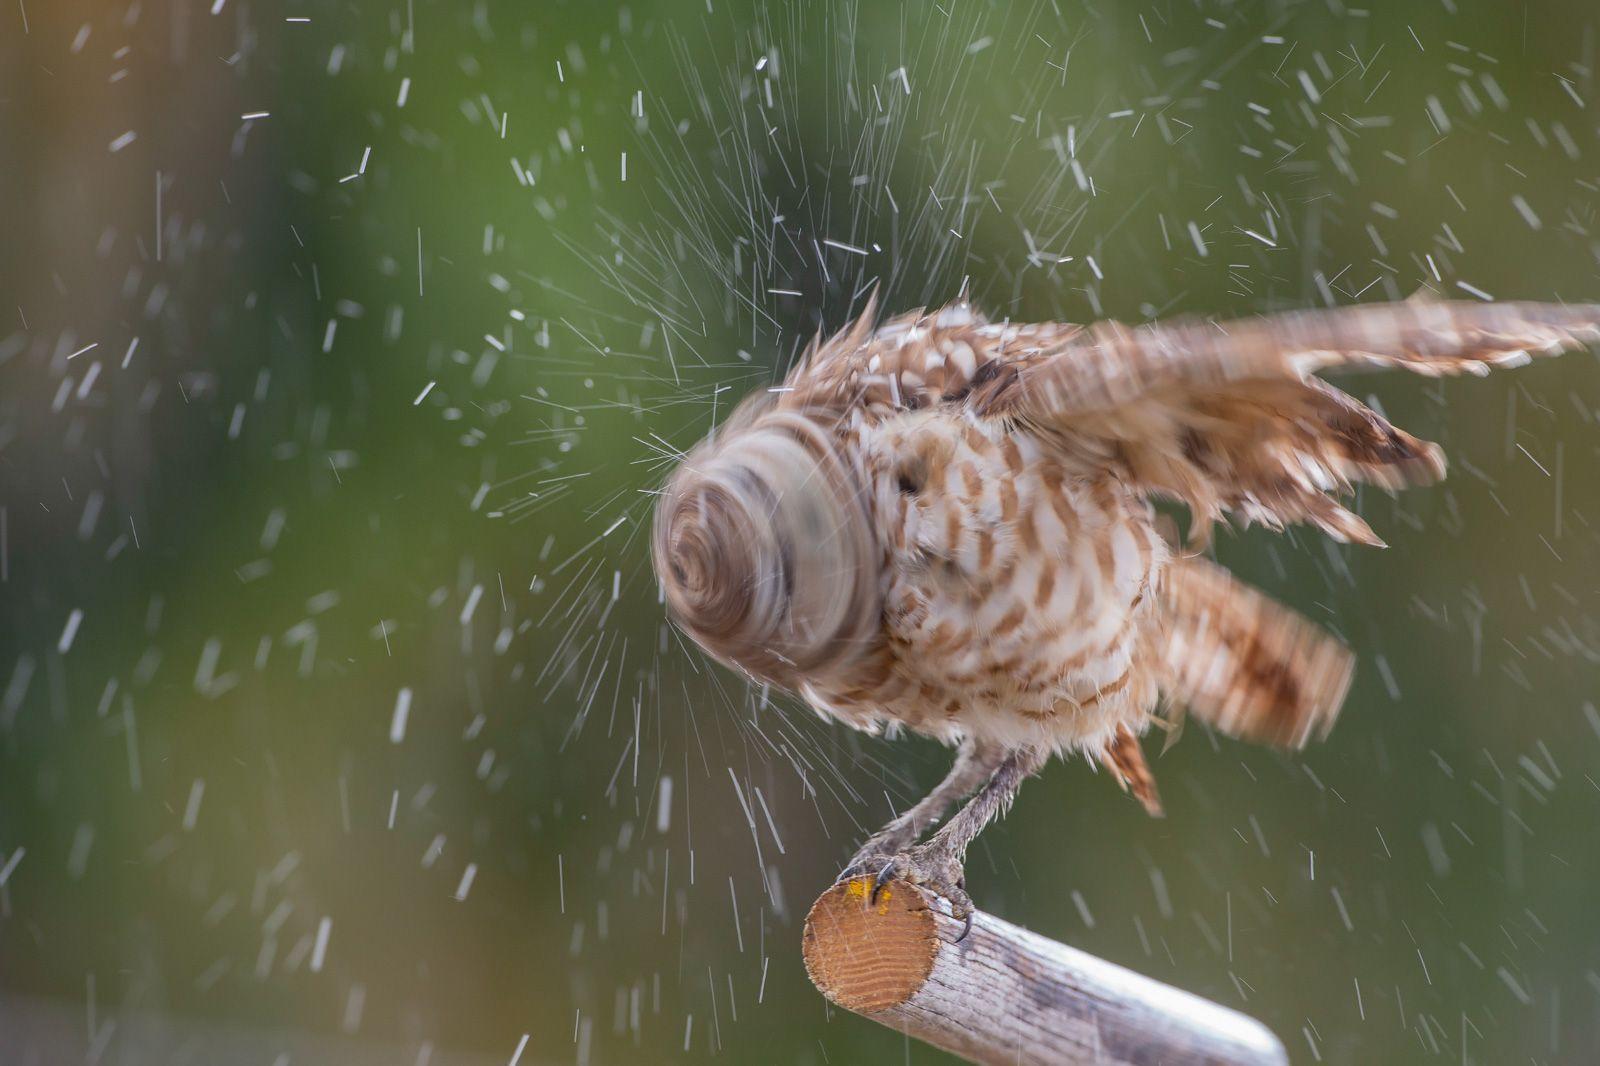  抖落身上雨水的穴鴞，来自摄影师WILLIAM KLEINFELDER。 